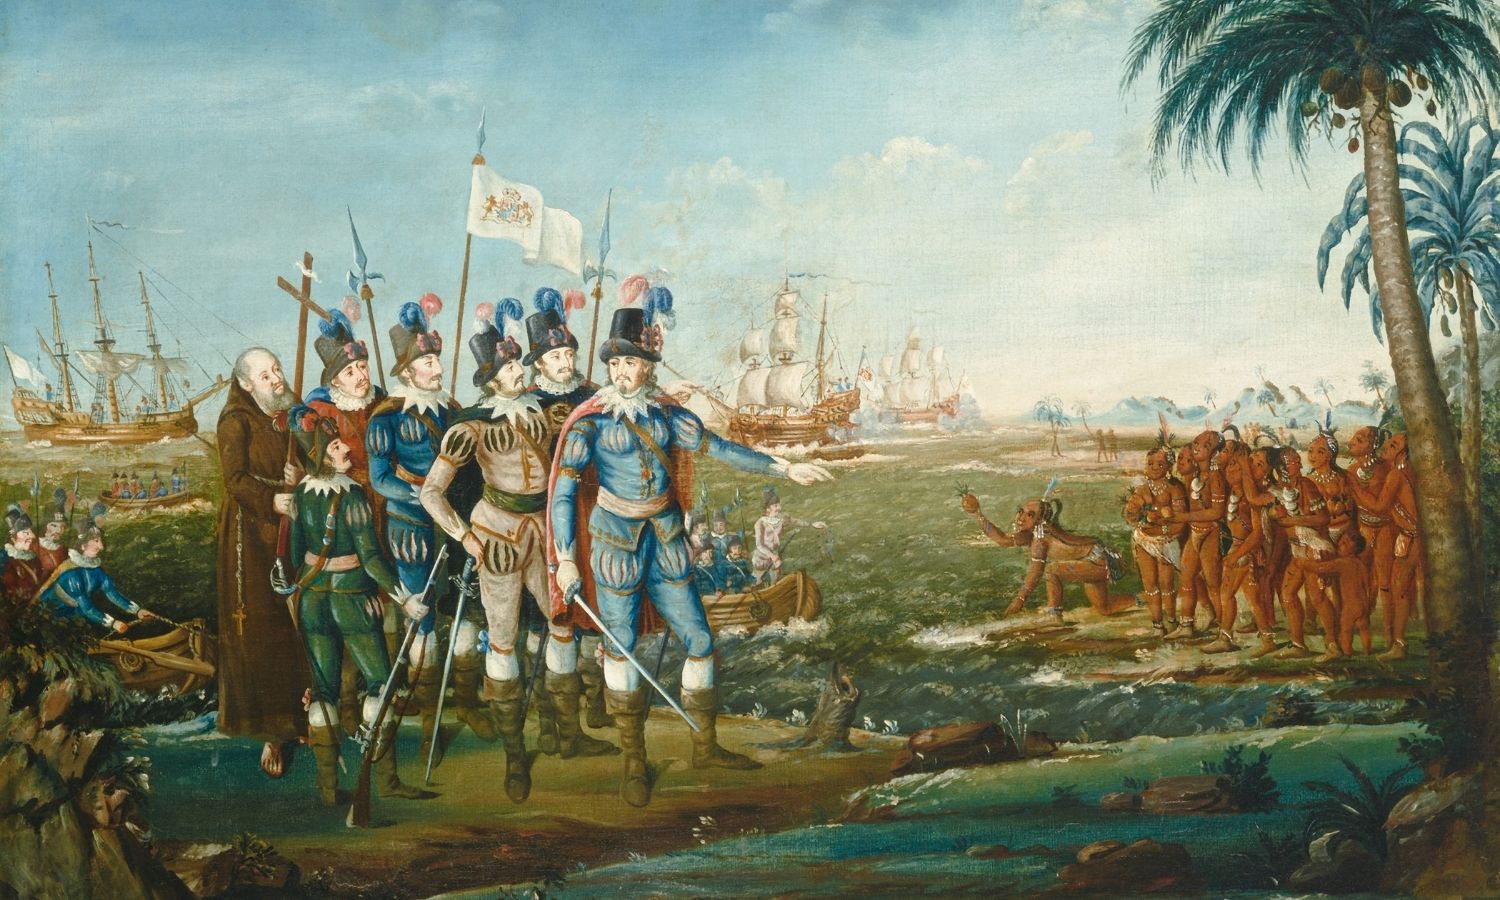 OTD in 1492: Explorer Christopher Columbus discovered Cuba.